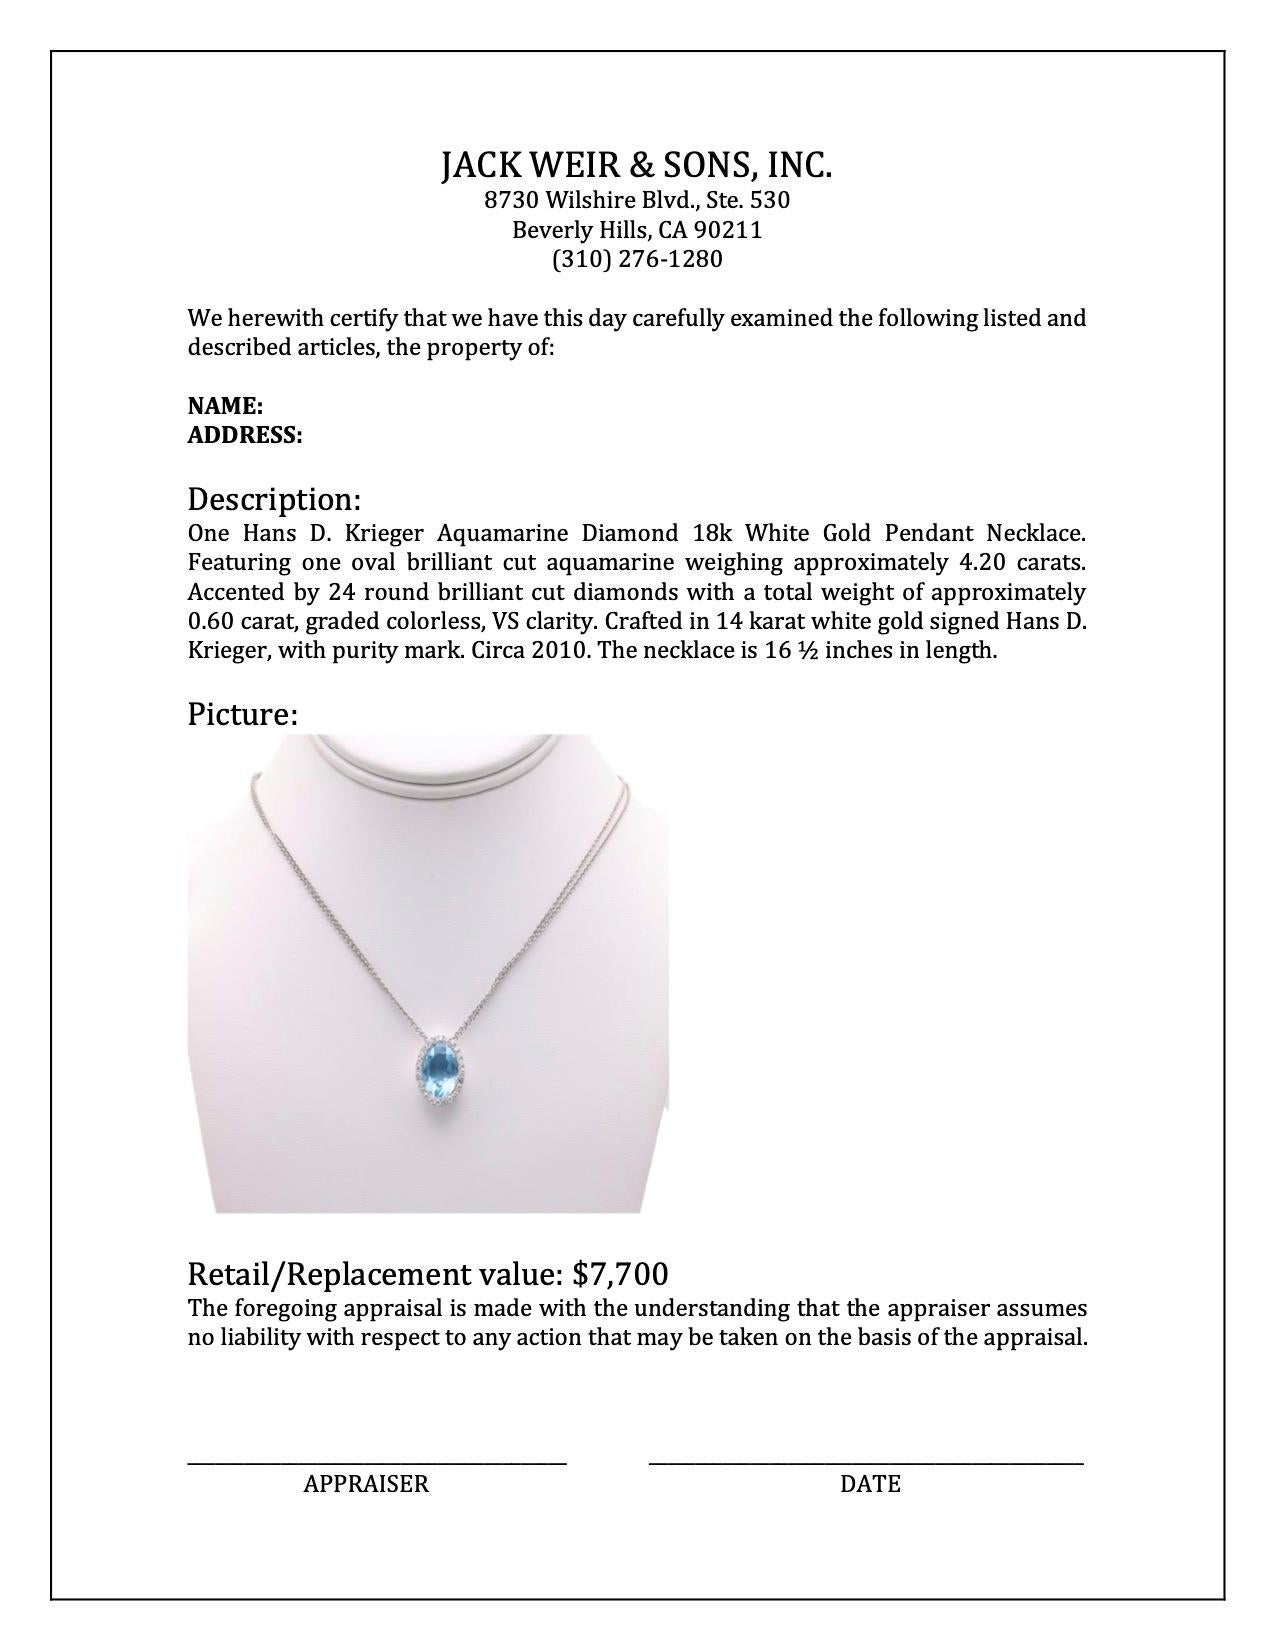 Hans D. Krieger Aquamarine Diamond 18k White Gold Pendant Necklace 1